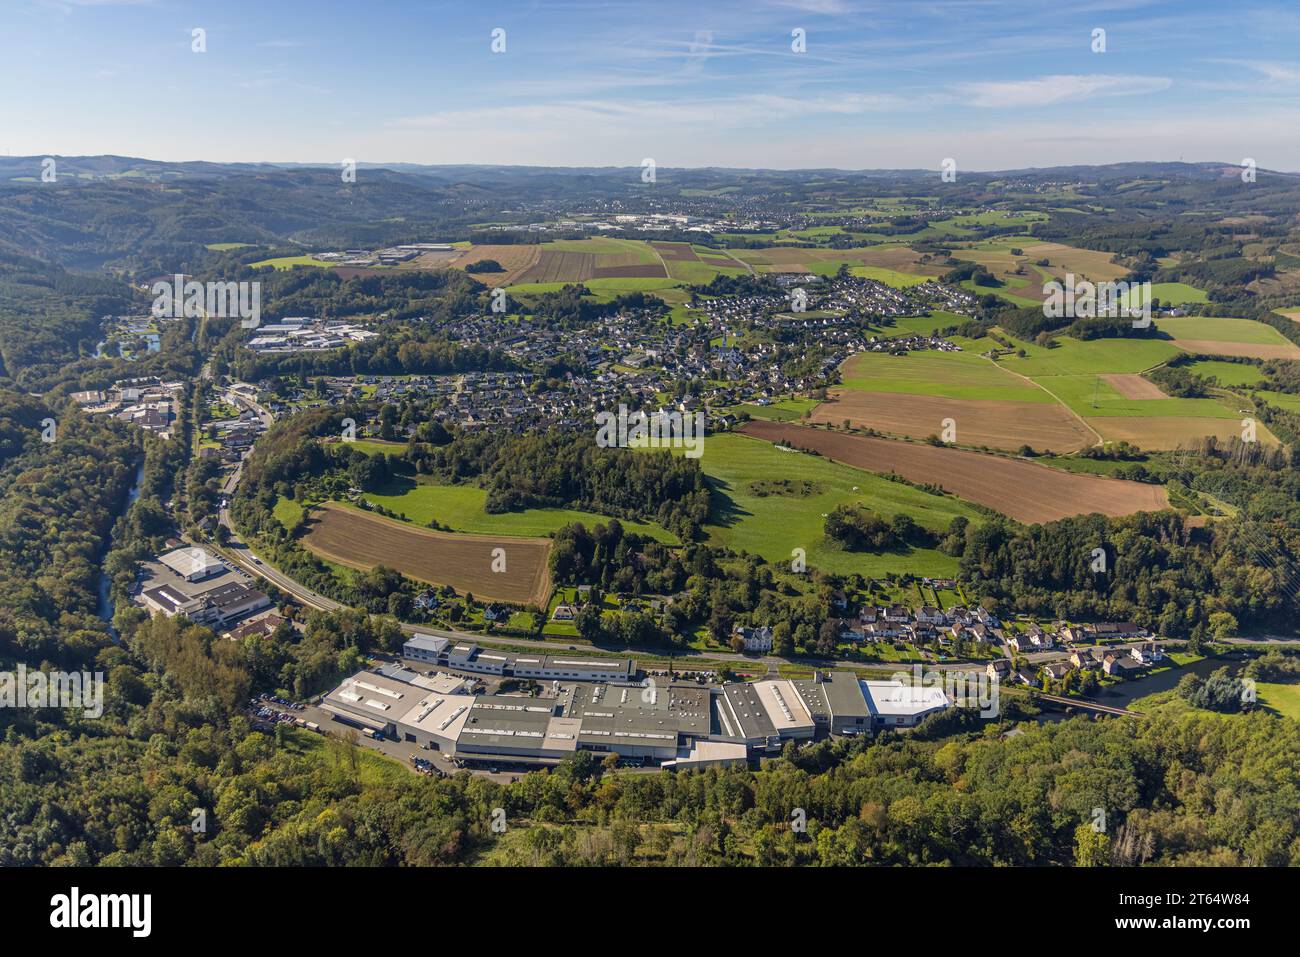 Vista aerea, vista del distretto di Heggen, dell'area protetta del paesaggio di Hohe Ley e della riserva naturale di Elberskamp, Heggen, Finnentrop, Sauerland, Renania settentrionale-W. Foto Stock